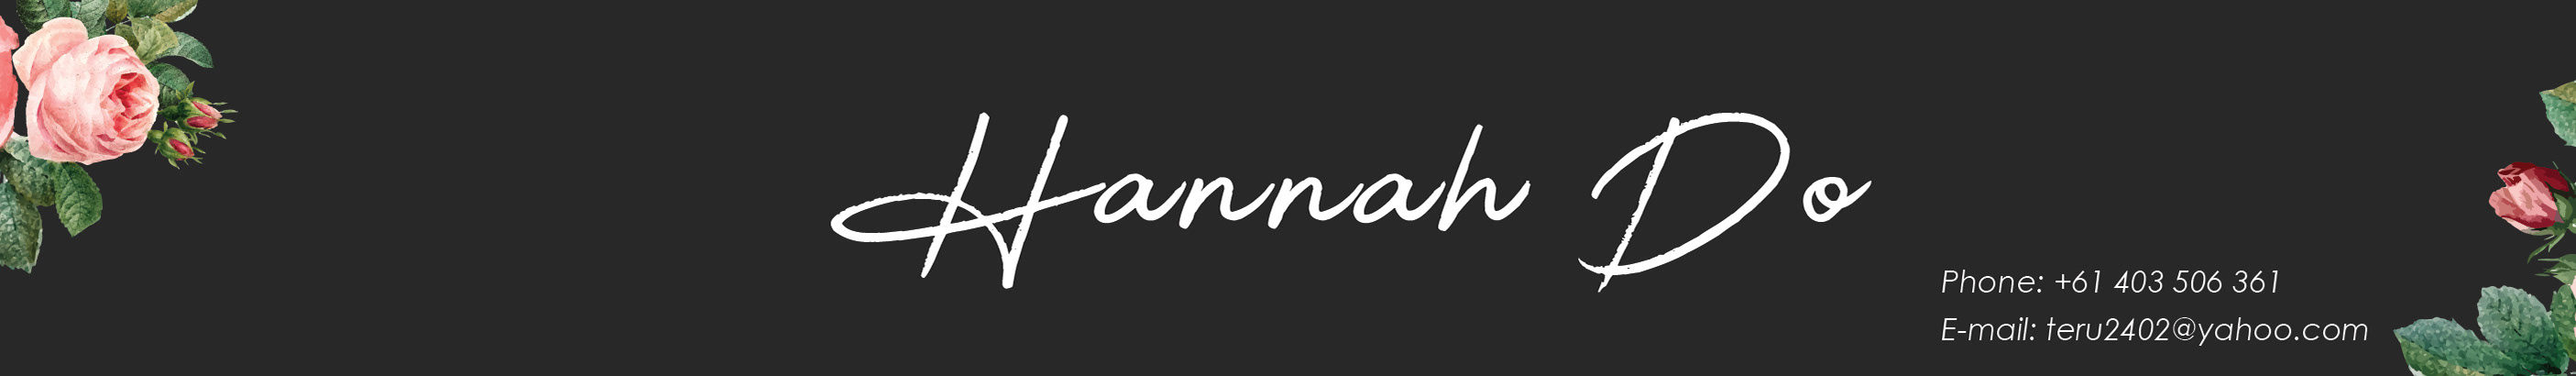 Bannière de profil de Hannah Do